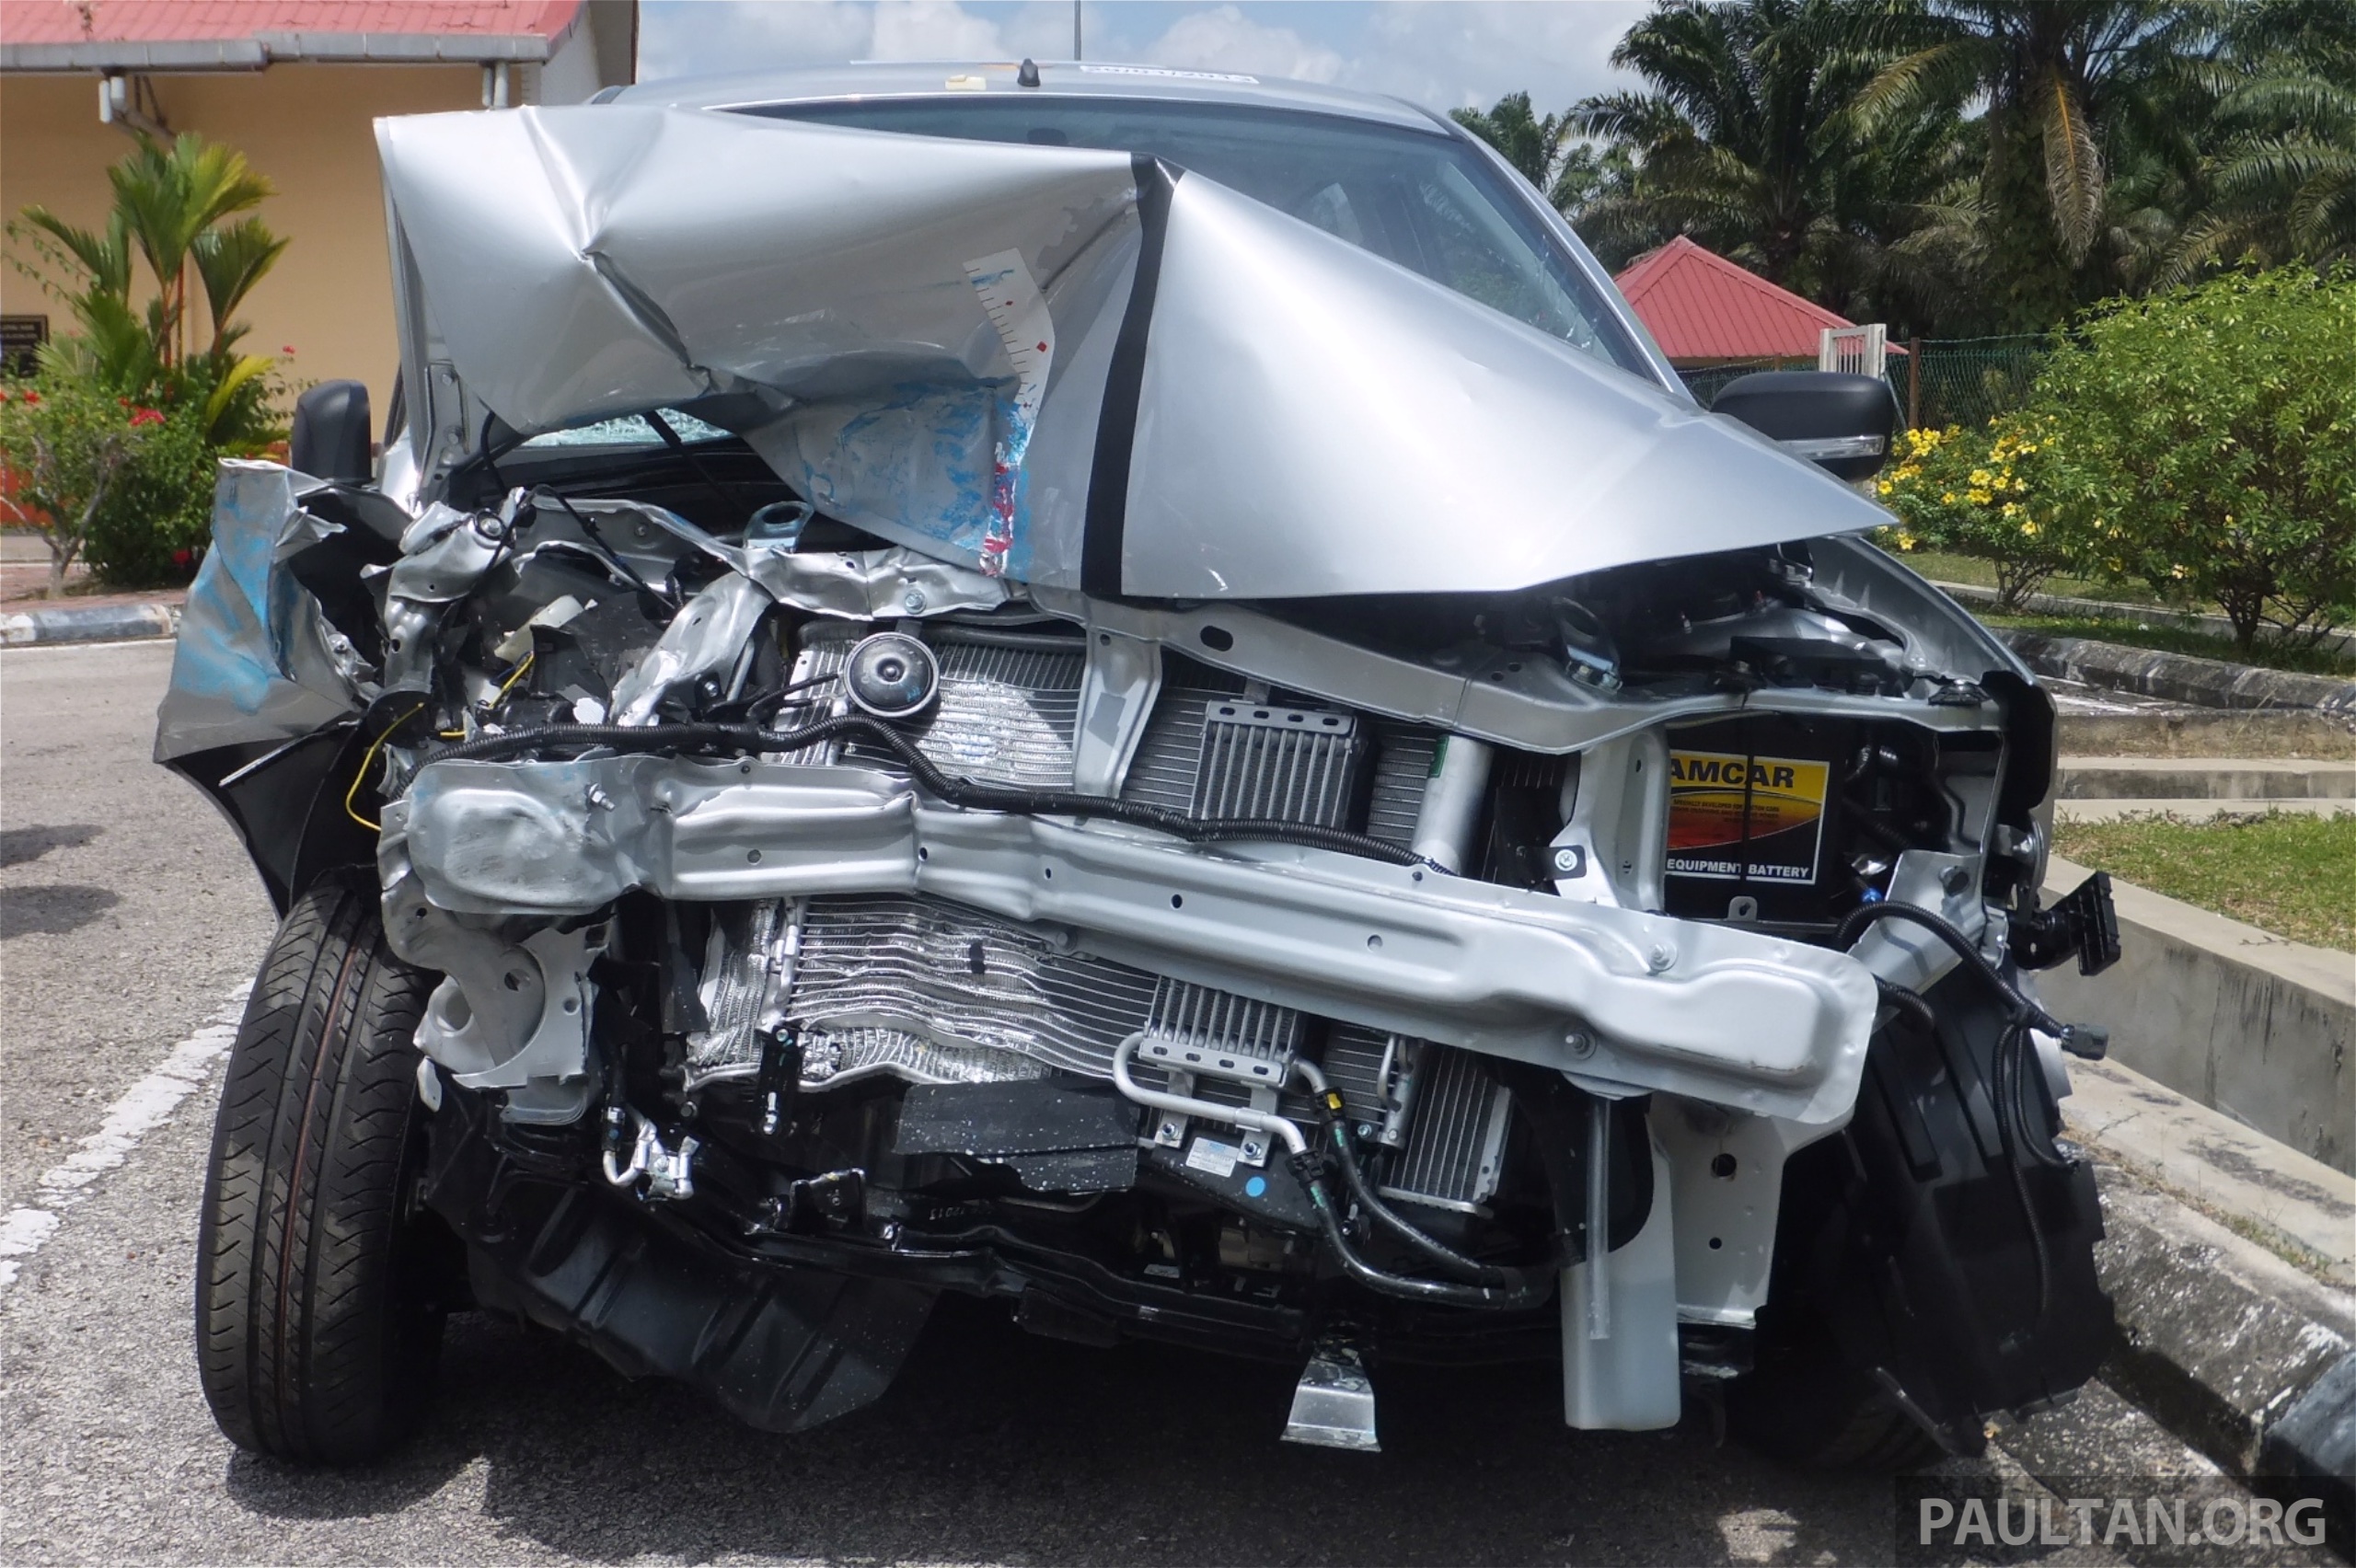 Jica Kaji Keadaan Lalu Lintas Di Malaysia Kesesakan Campuran Trafik Dikesan Faktor Penyebab Kemalangan Paultan Org